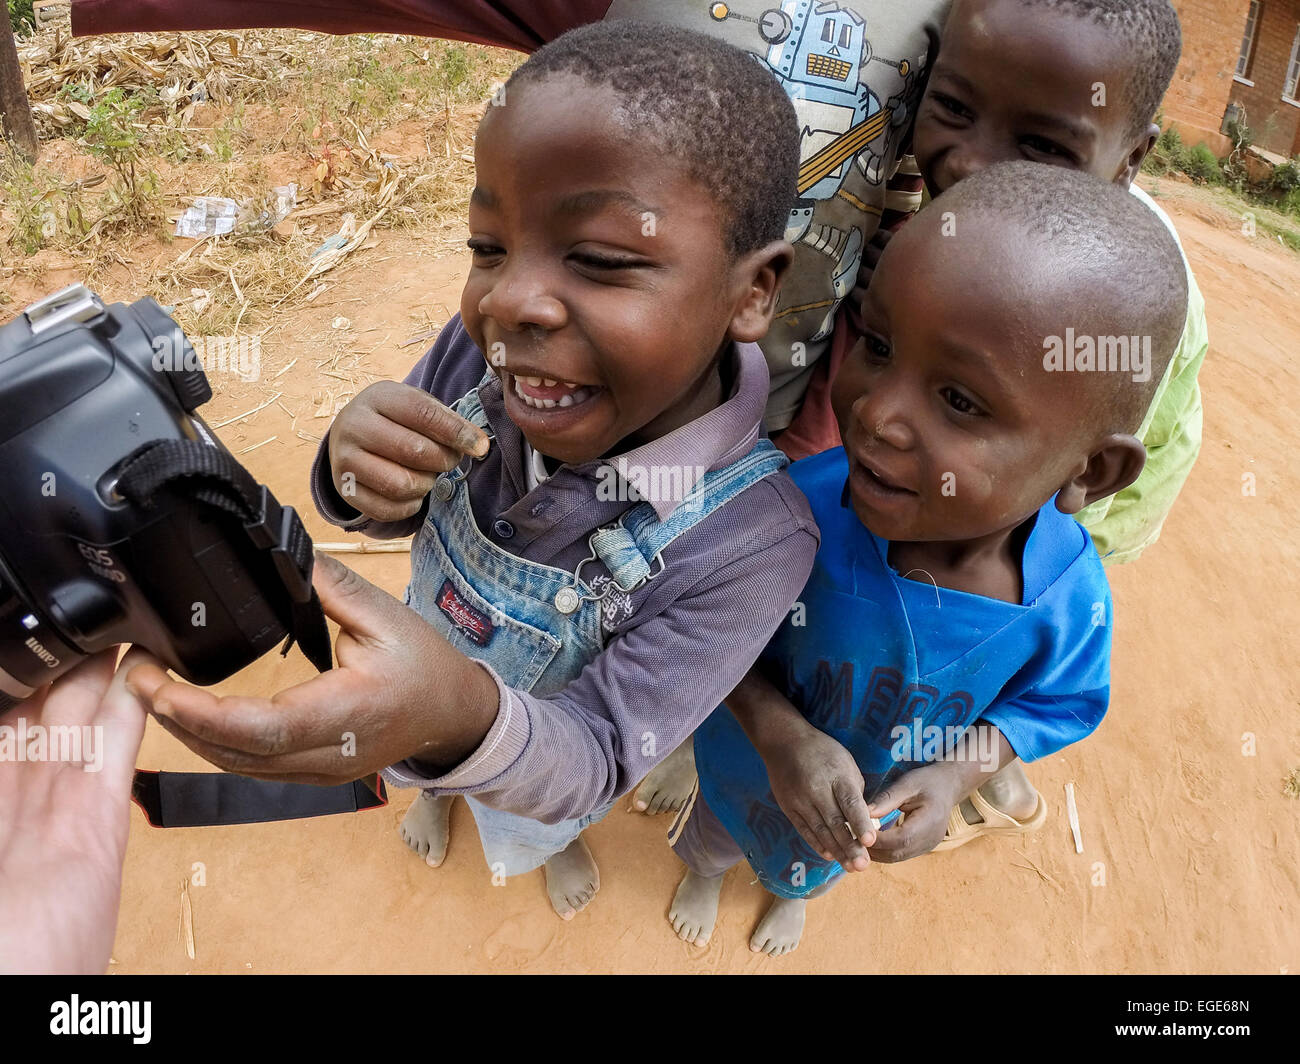 Les enfants réagissent à se voir sur l'appareil photo. Banque D'Images